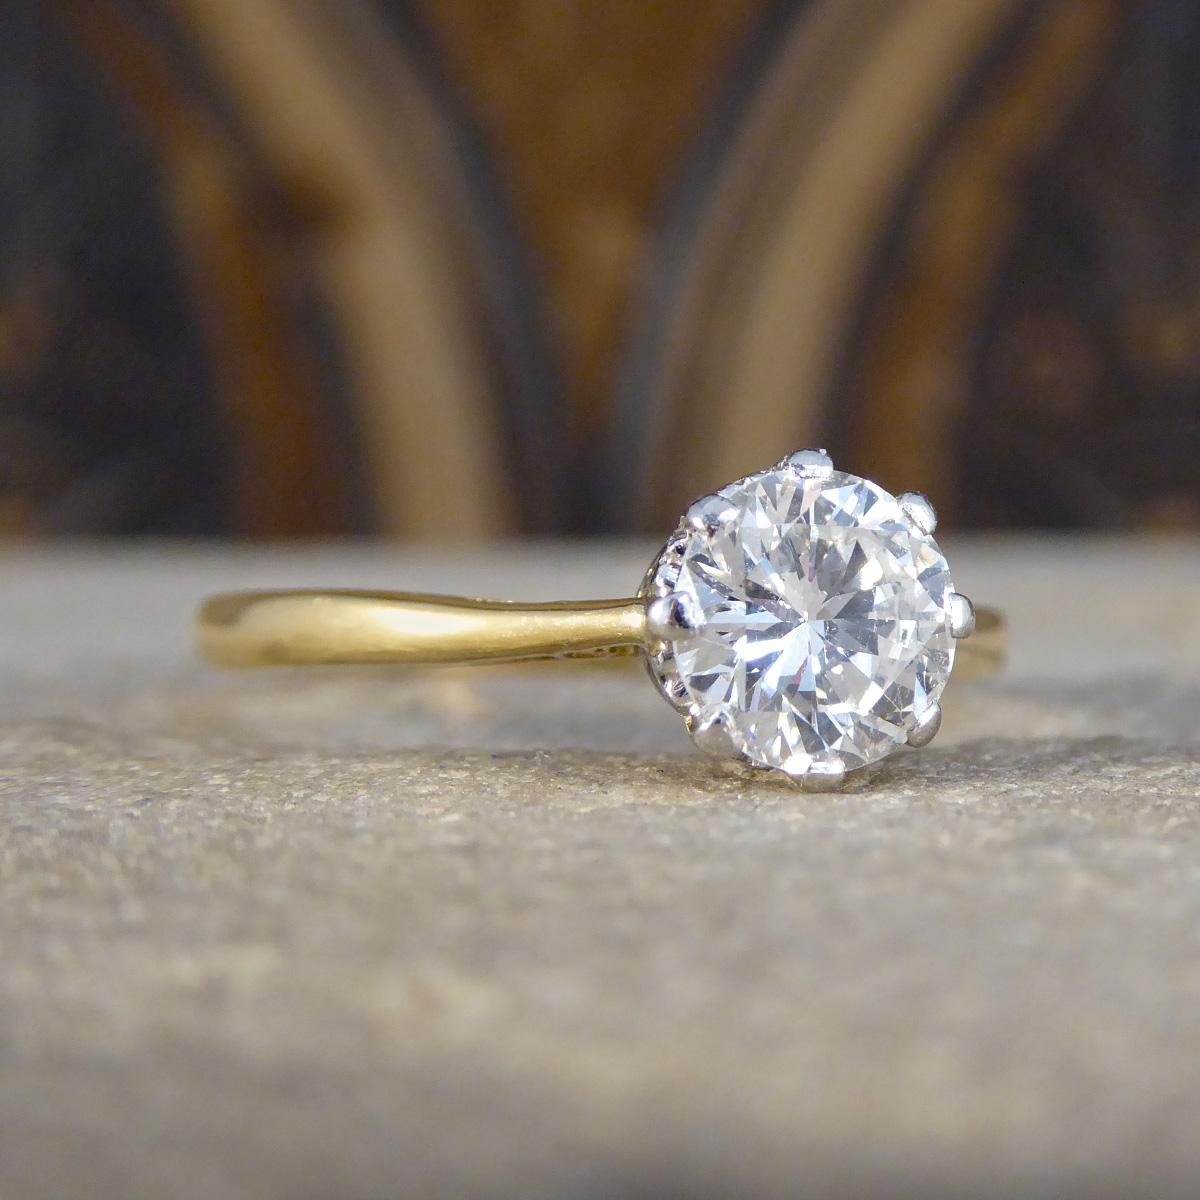 Versetzen Sie sich in die Vergangenheit mit unserem Solitär-Verlobungsring mit 1,00 Karat Diamant aus den 1920er Jahren, einem Schmuckstück, das die Eleganz vergangener Zeiten mit zeitloser Schönheit verbindet. Dieses exquisite Schmuckstück ist aus